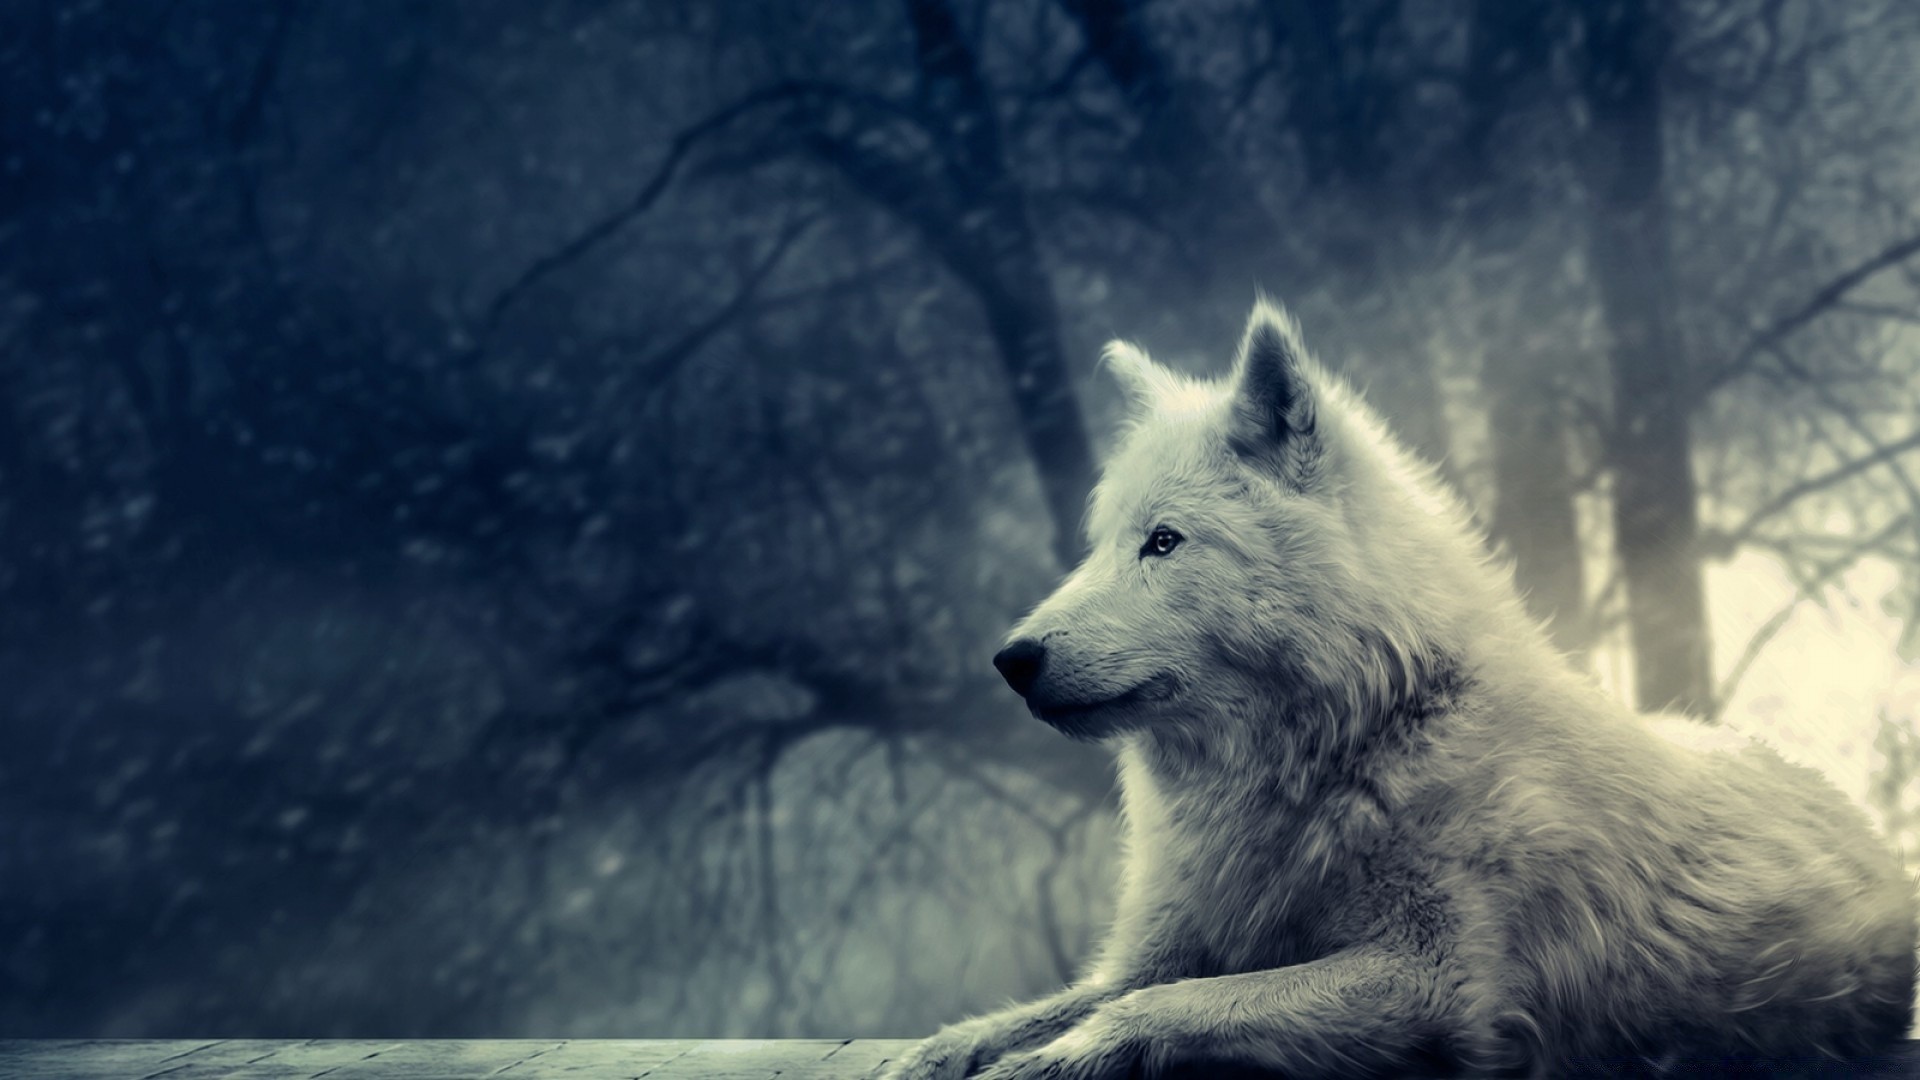 фэнтези снег зима волк млекопитающее на открытом воздухе природа морозный холодная собака один